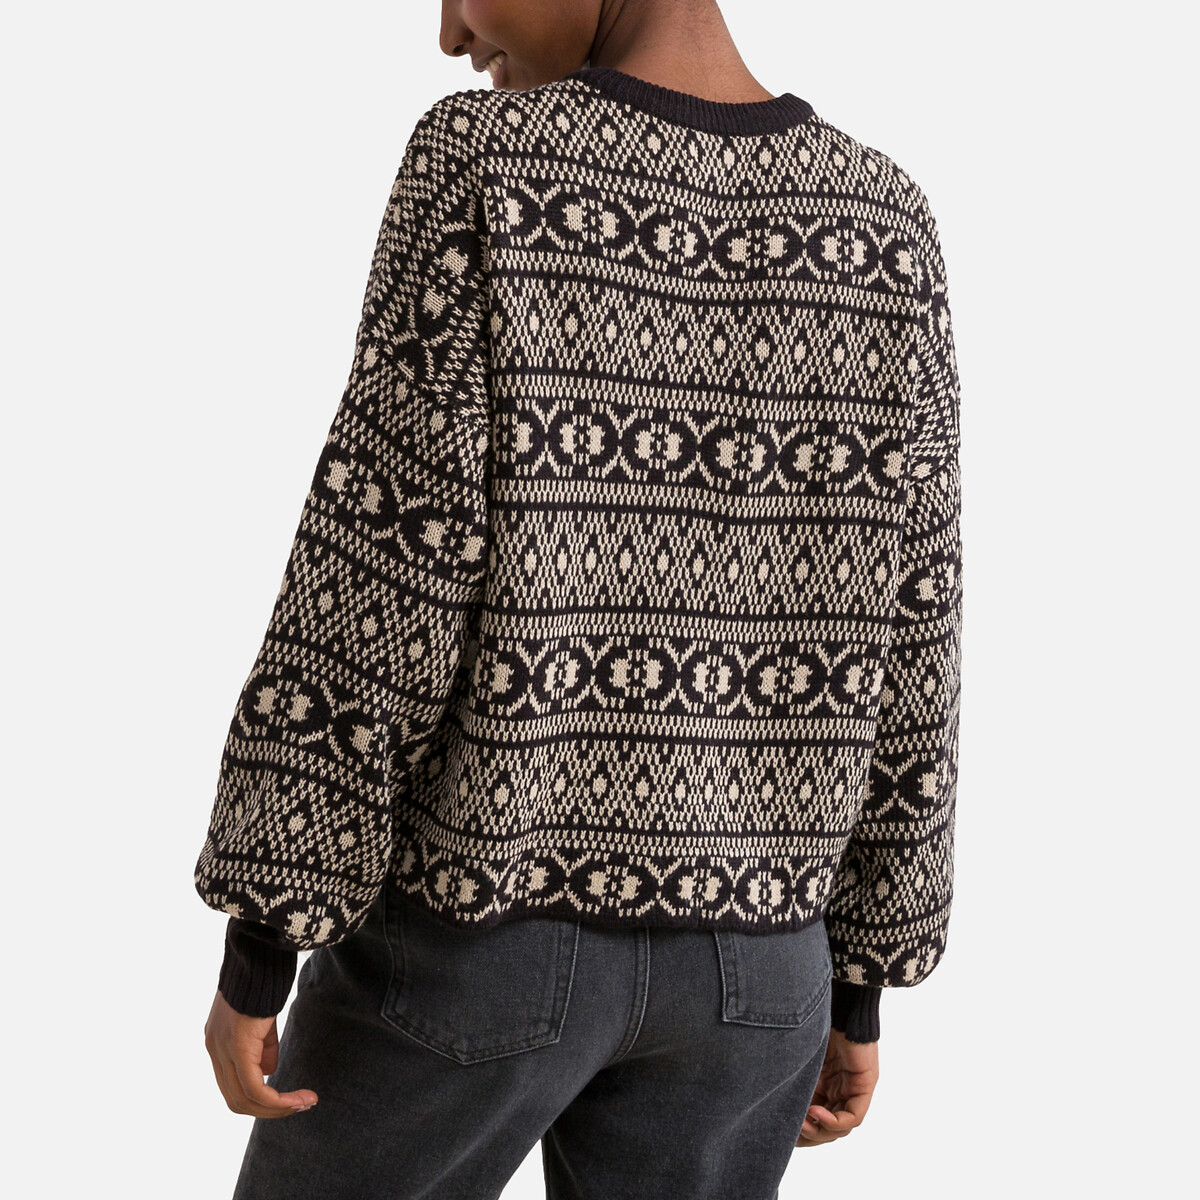 Пуловер Укороченный с жаккардовым узором M черный LaRedoute, размер M - фото 4